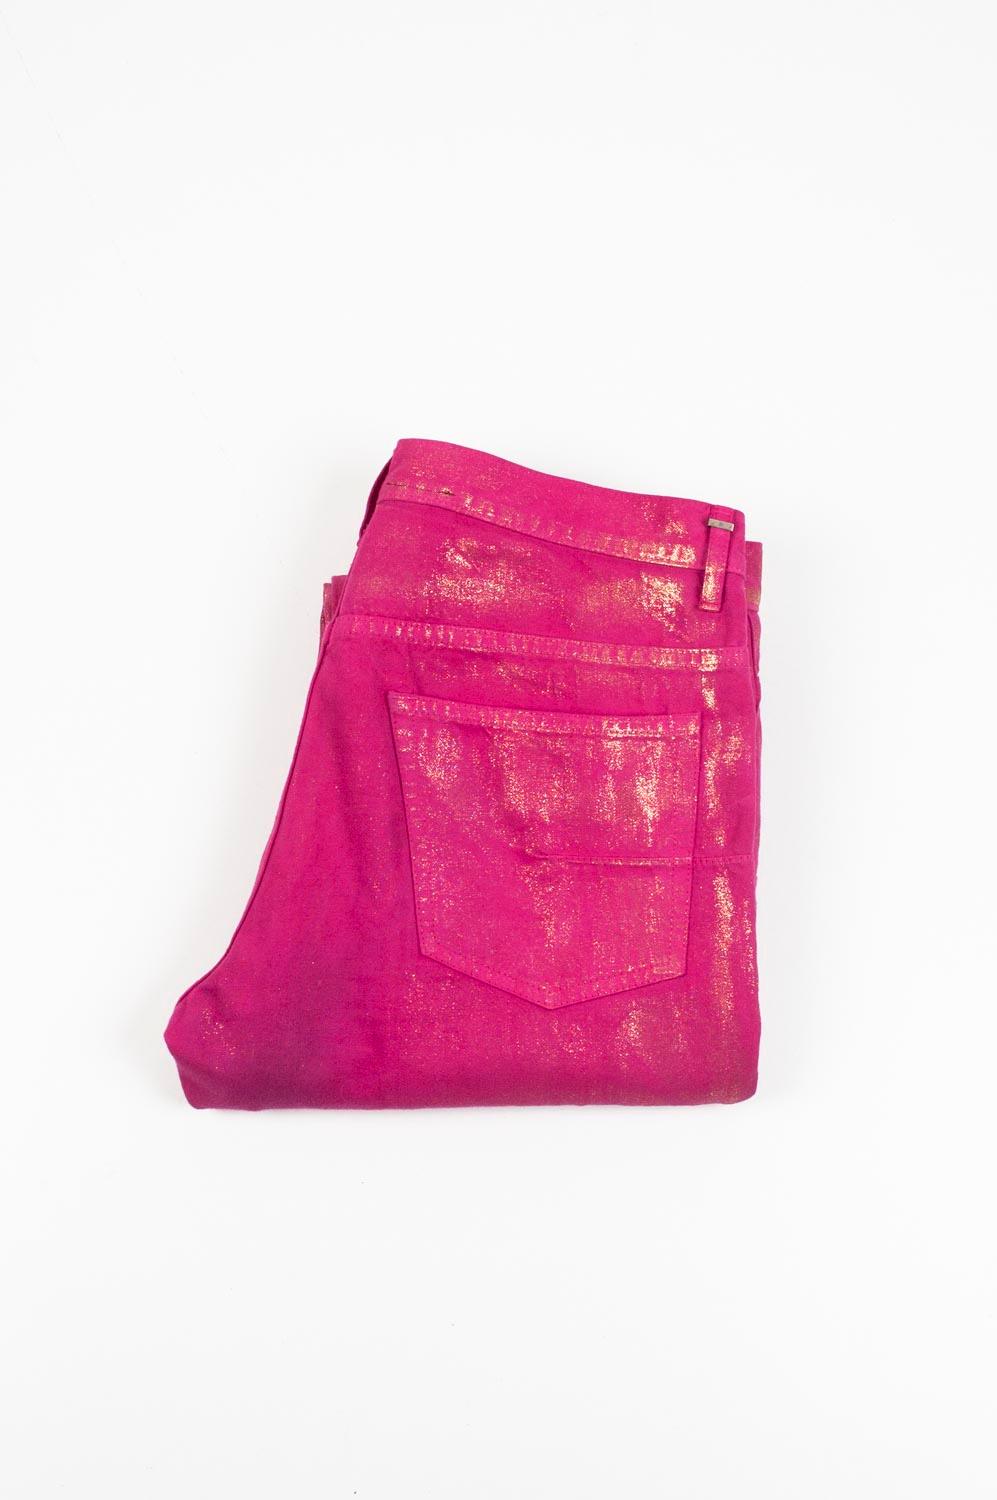 Zu verkaufen ist 100% echte Dior Homme Shiny Glitter Herren Jeans
Farbe: Rosa
(Eine tatsächliche Farbe kann ein wenig variieren aufgrund individueller Computer-Bildschirm Interpretation)
MATERIAL: 100% Baumwolle
Tag Größe: 31W
Diese Jeans sind von